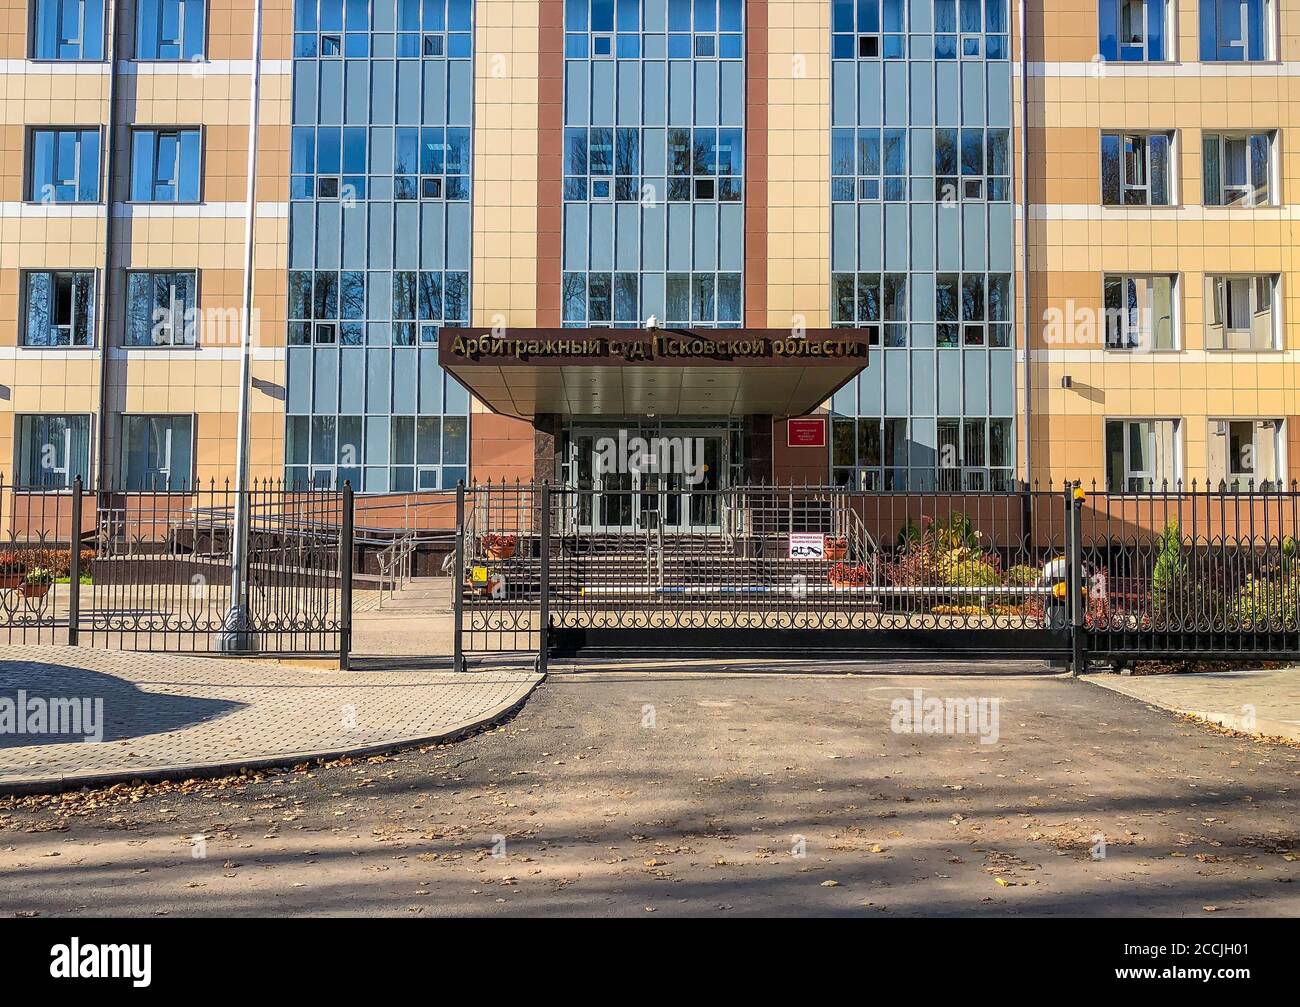 Pskov, Fédération de Russie - 16 octobre 2018 : façade du bâtiment du tribunal d'arbitrage de la région de Pskov. Banque D'Images